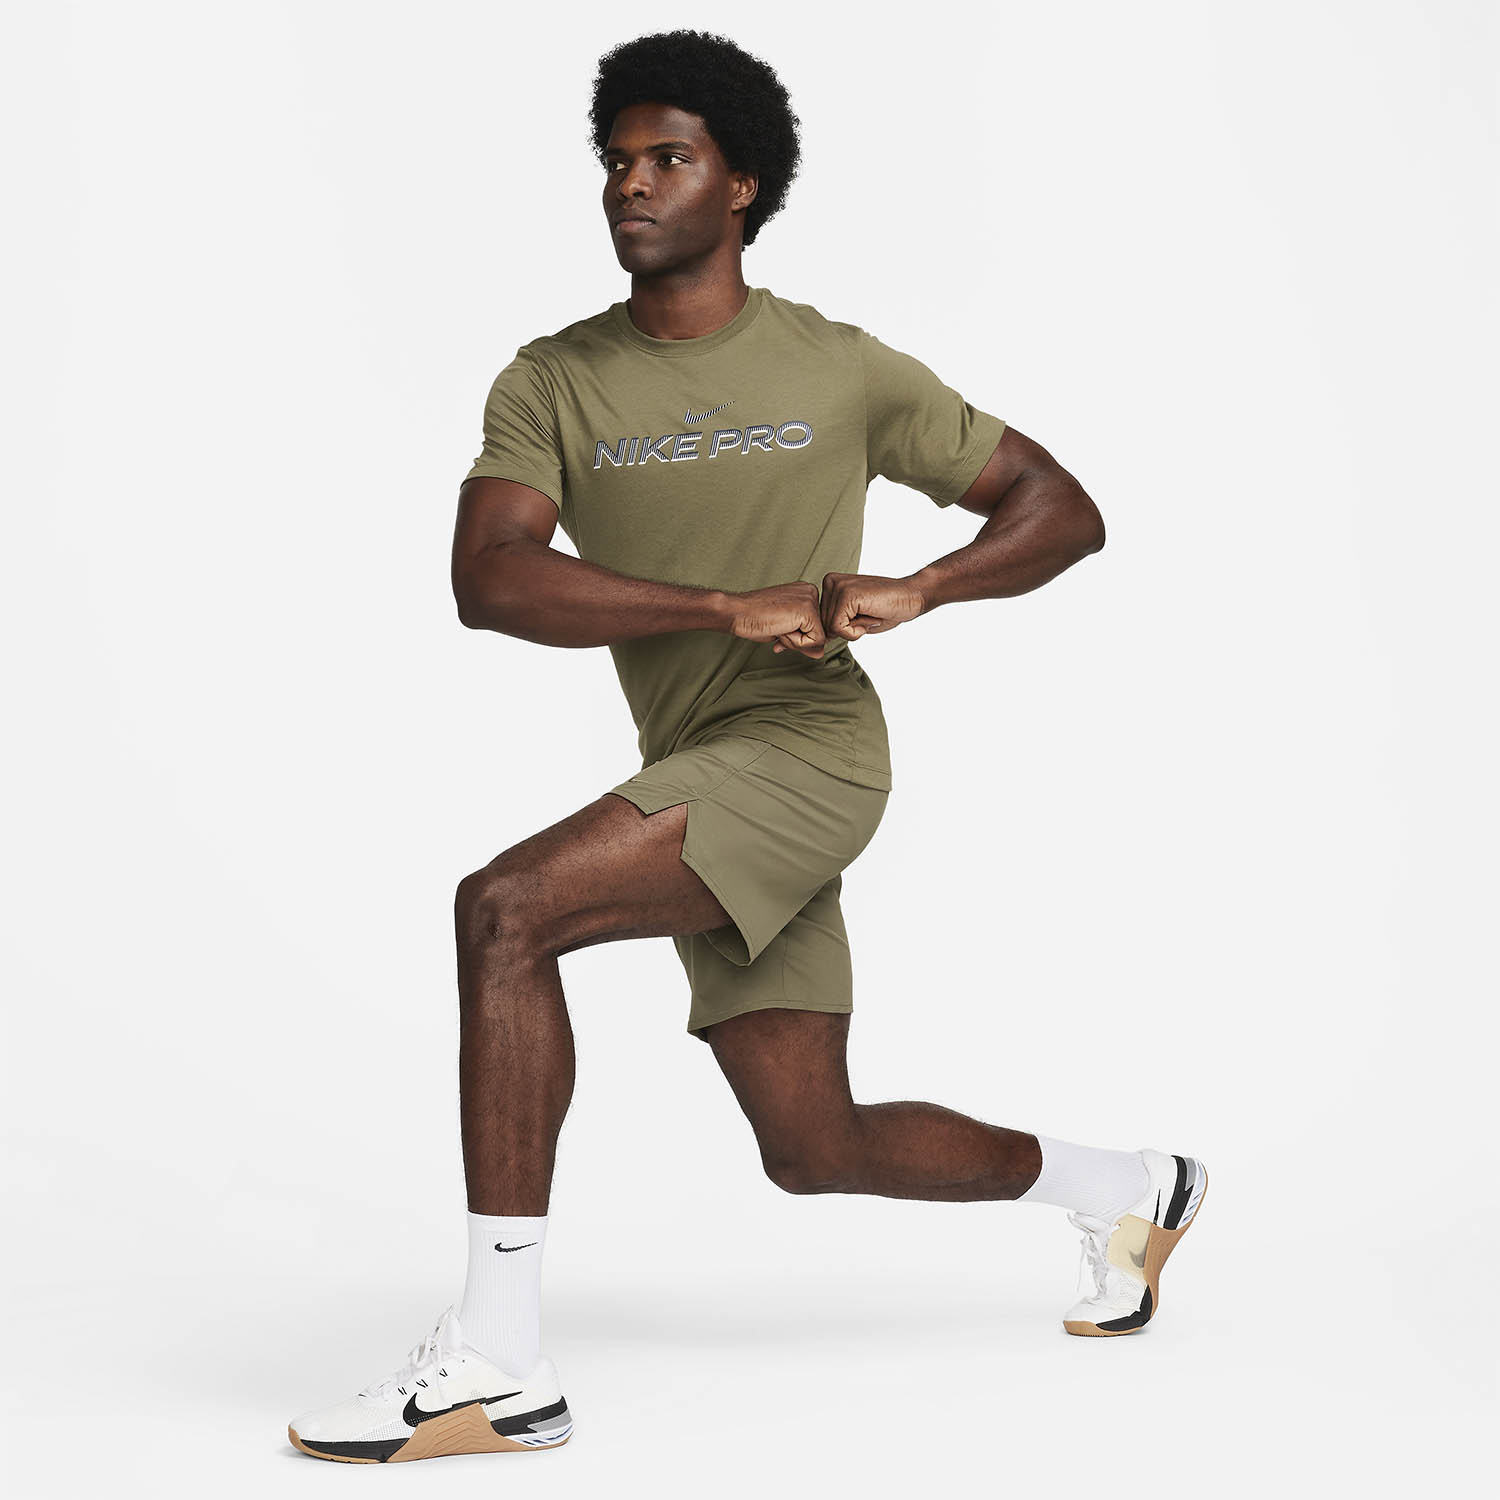 Nike Pro Fitness Maglietta - Medium Olive